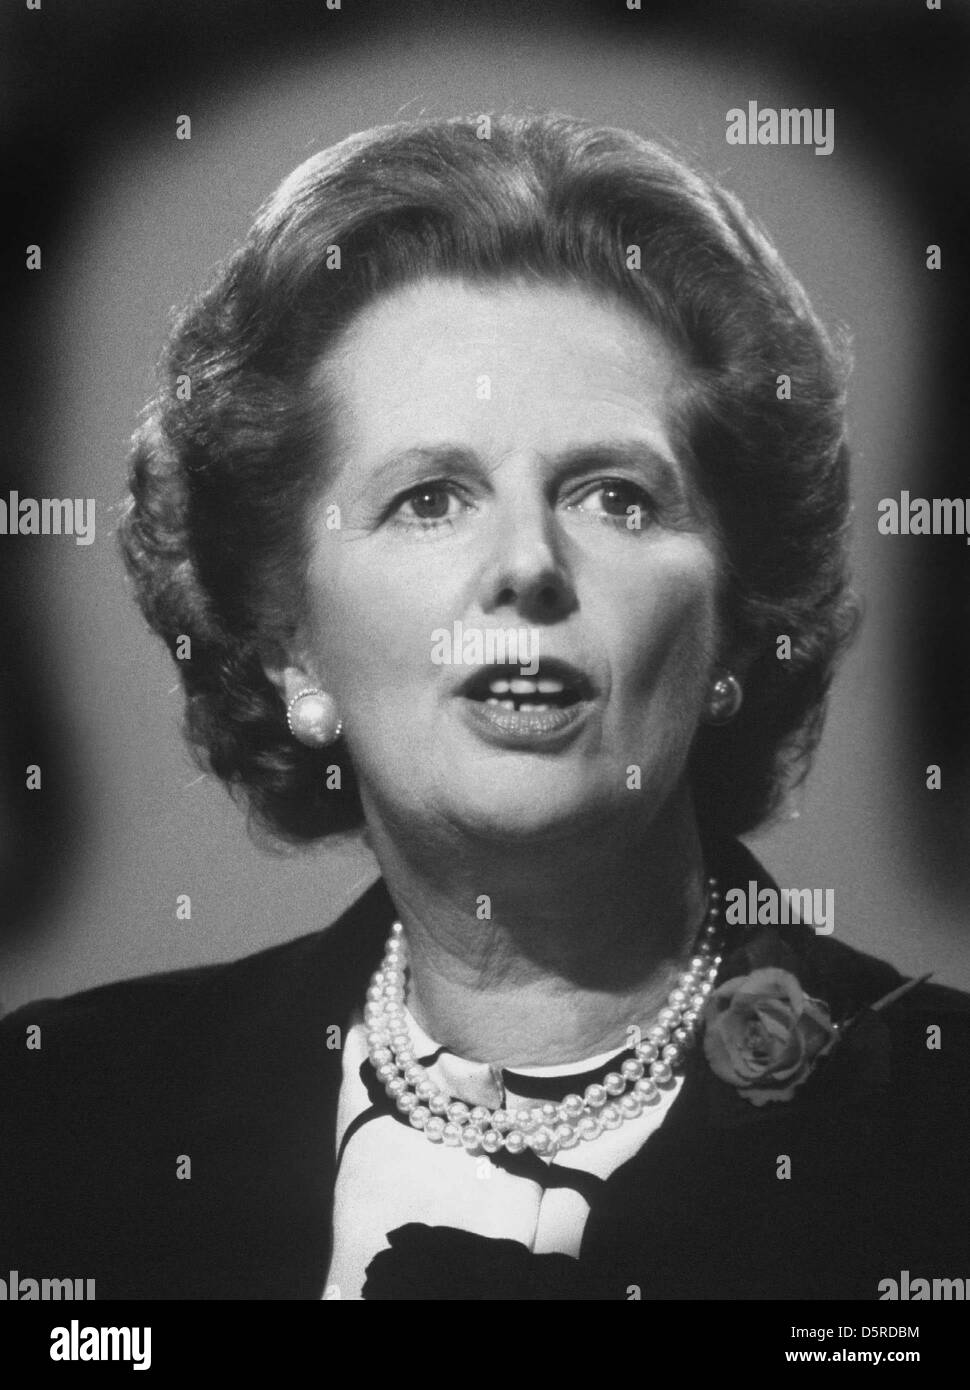 Archiv: Lady Margaret Thatcher starb heute 8. April 2013. Dieses Bild wurde in den 80 aufgenommen, wenn sie ihre Kraft in der Höhe von ihr war. Lady Thatcher - Margaret Thatcher - Prime Minister Margaret Thatcher - die 1980 auf dem Höhepunkt ihrer macht. Bildnachweis: David Cole / Alamy Live News Stockfoto